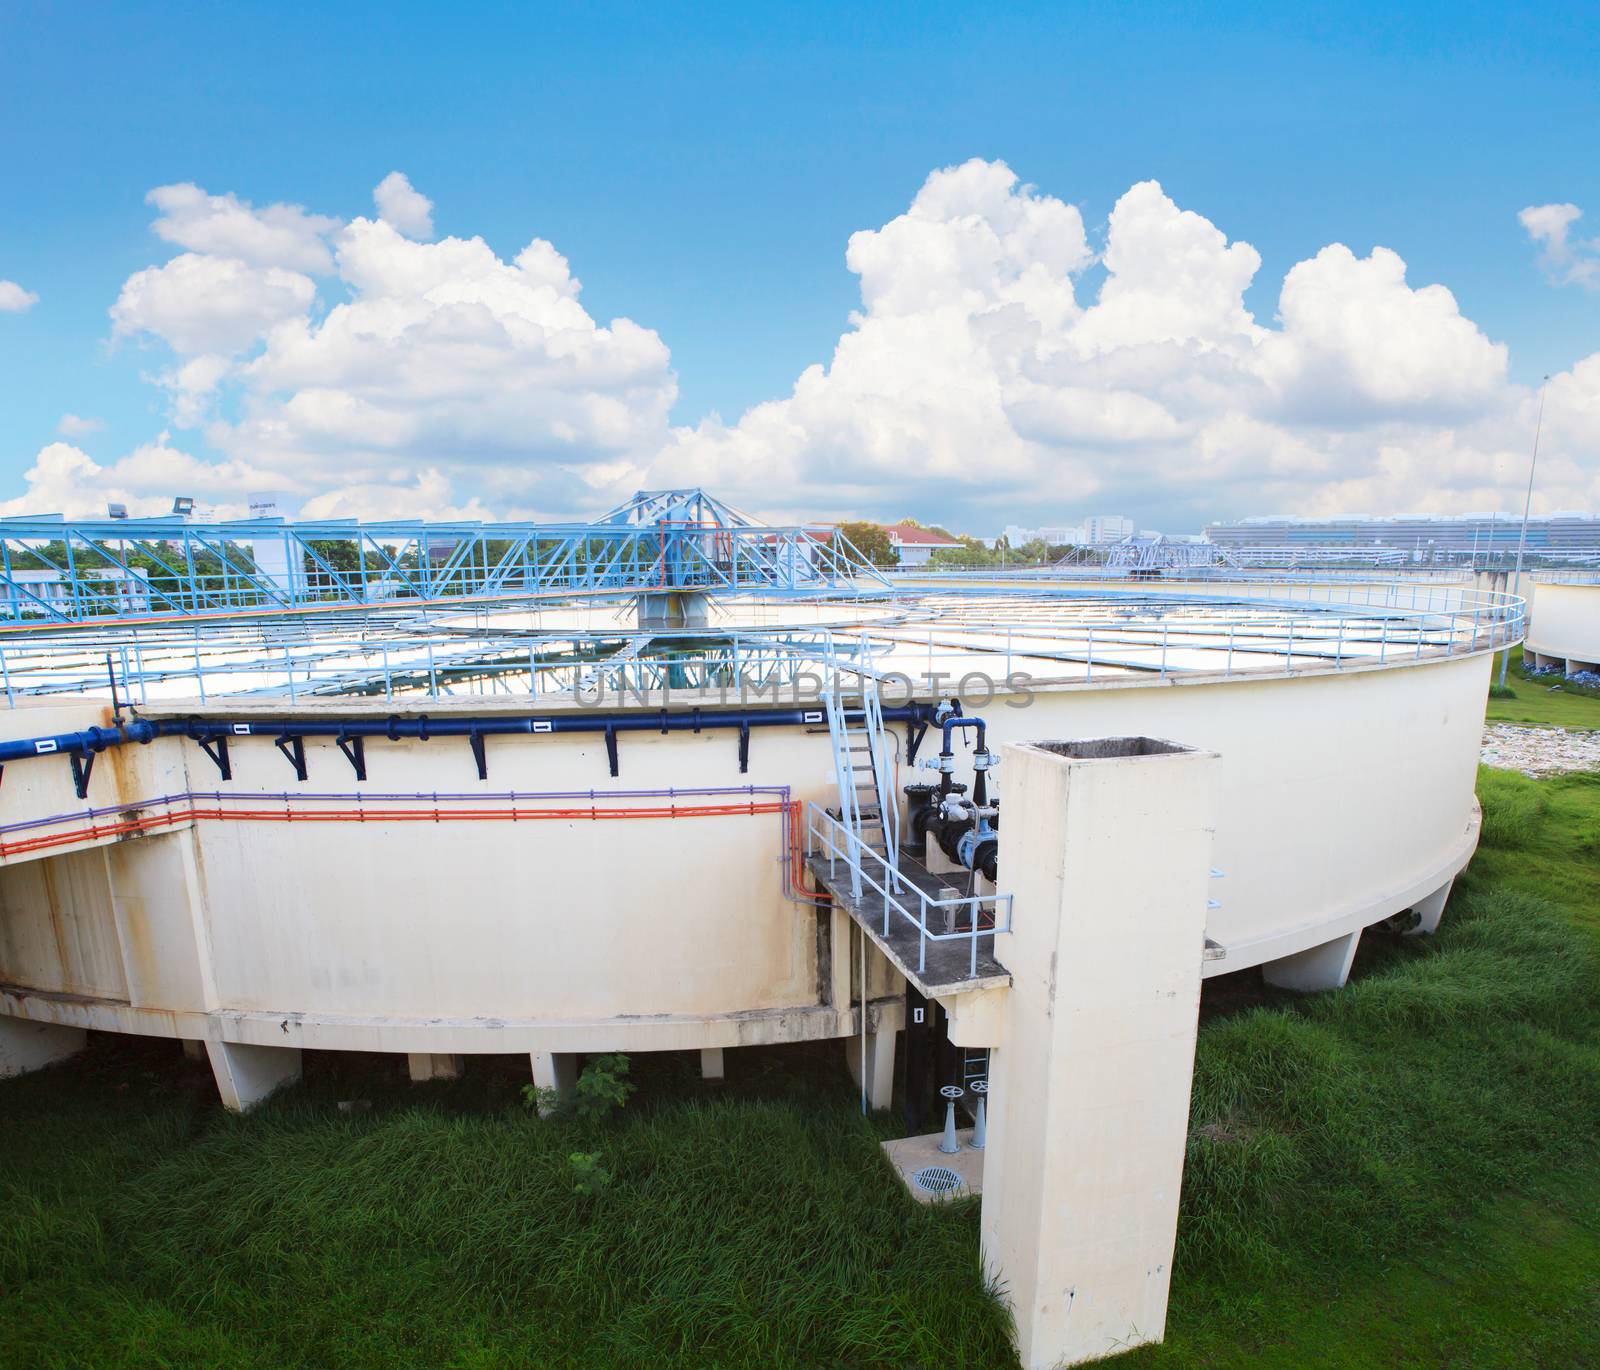 big tank of water supply in metropolitan water work industry pla by khunaspix